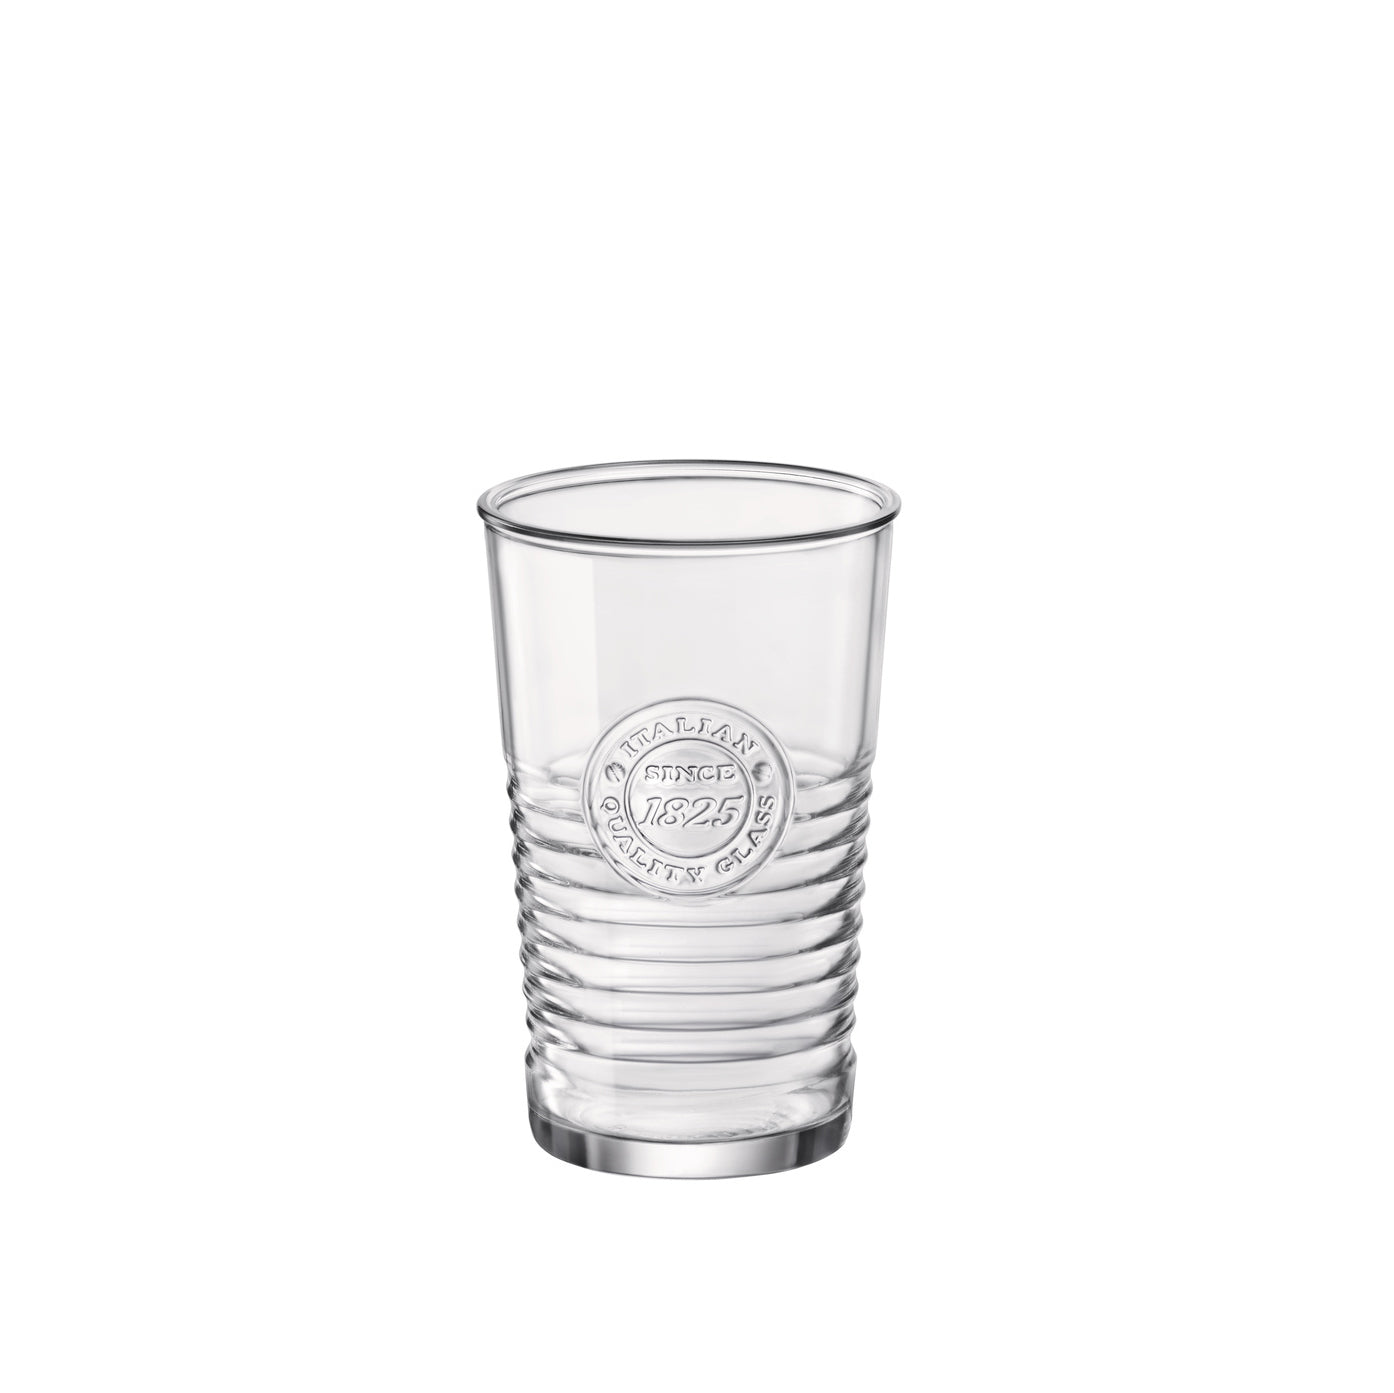 Officina 1825 16 oz. Cooler Drinking Glasses (Set of 4)